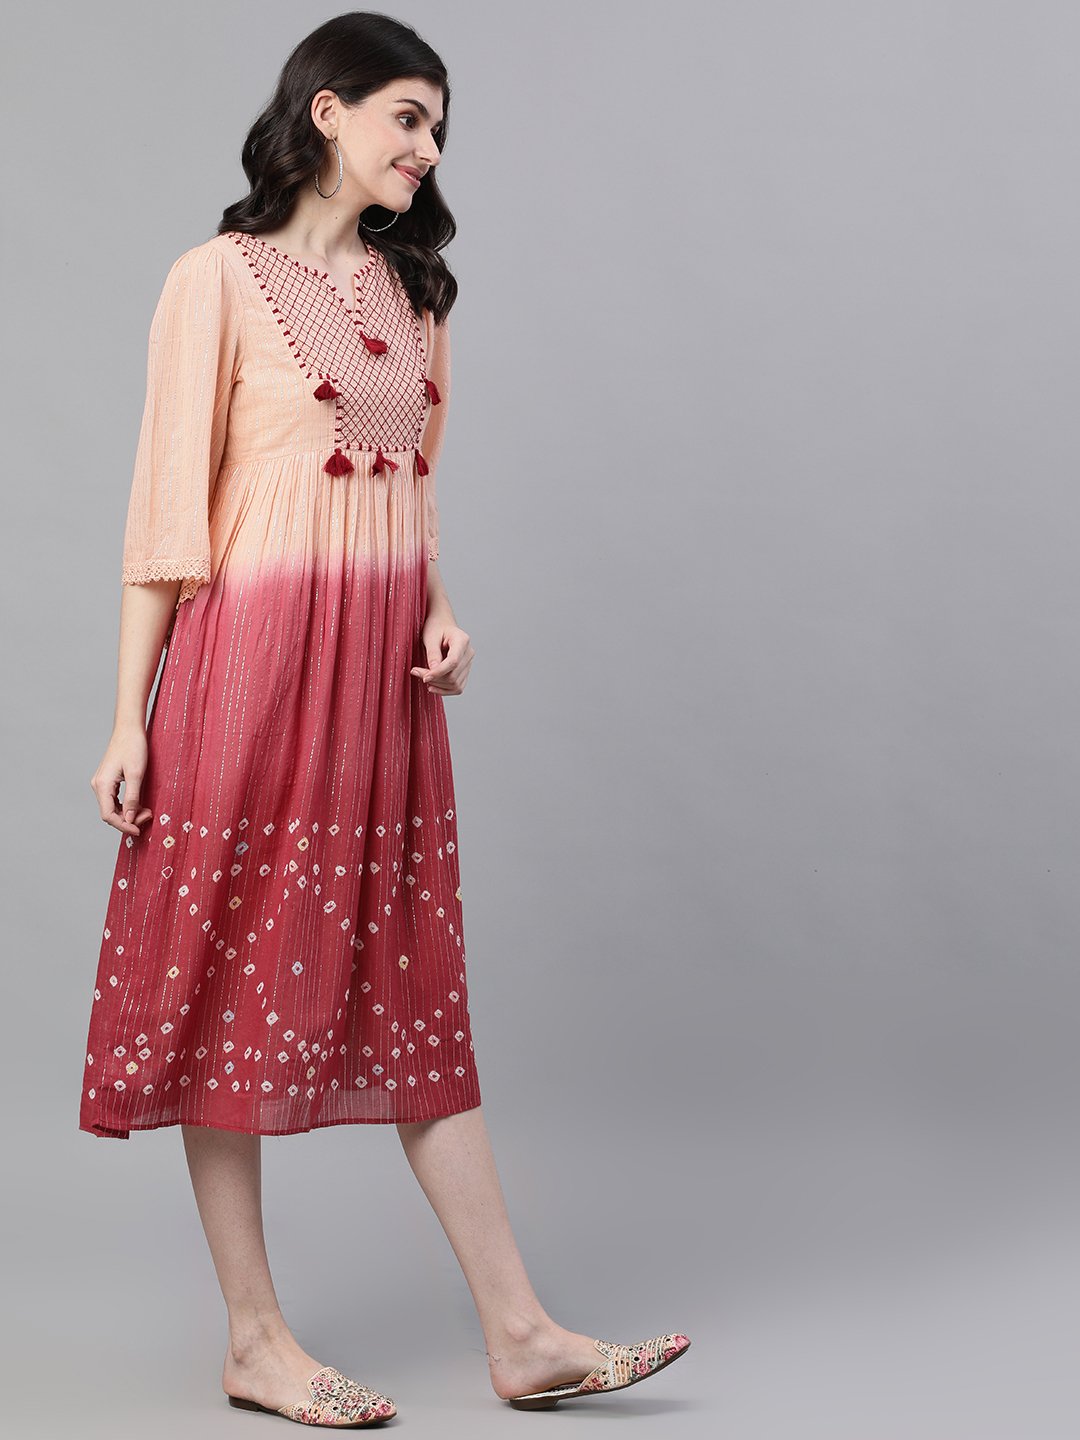 Ishin Women's Cotton Peach Lurex Smoked Tie & Dye Butterfly Dress